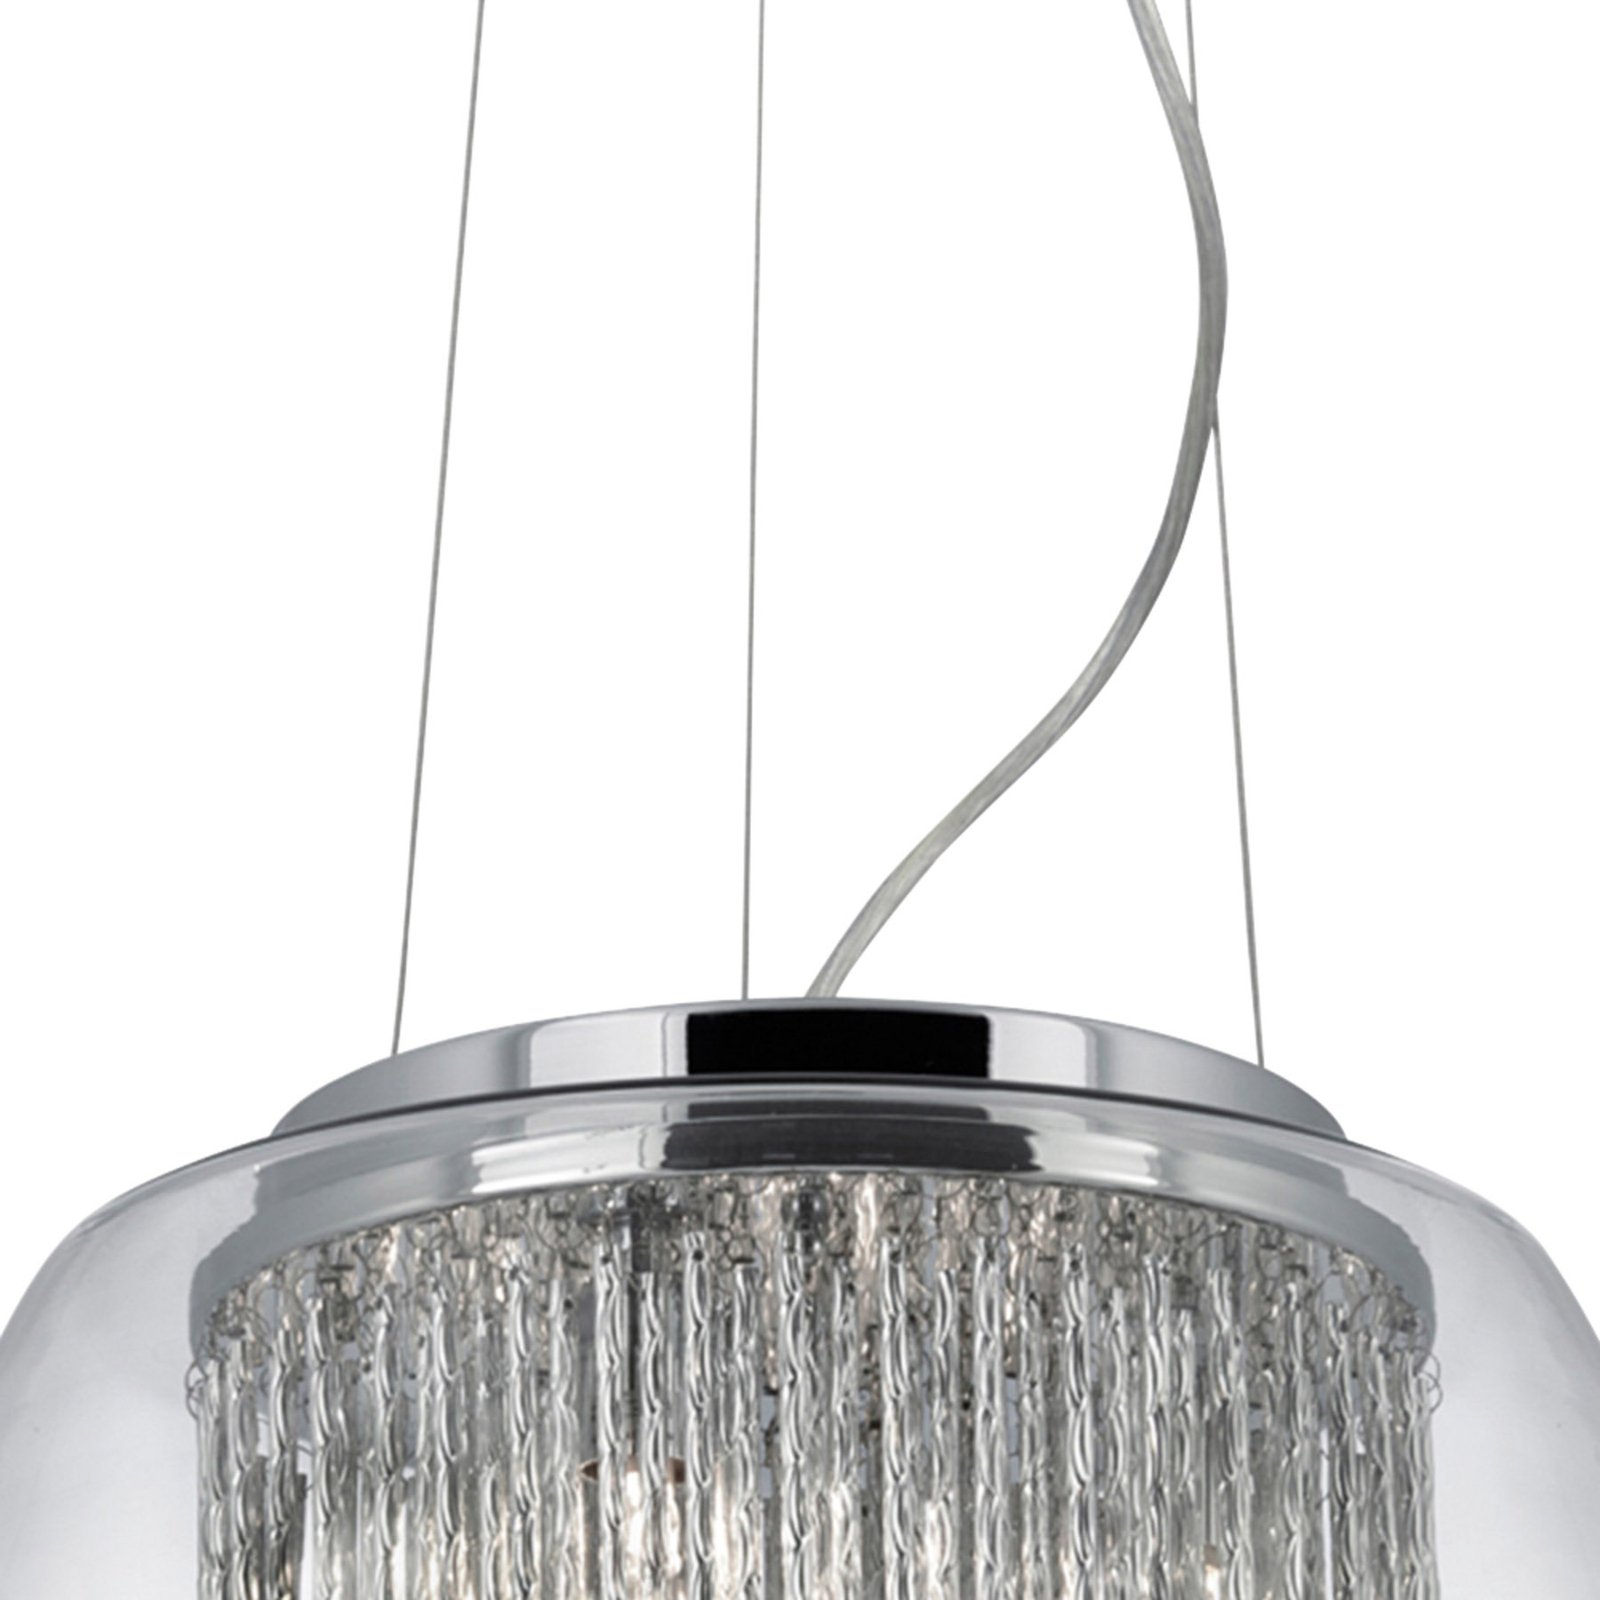 Glazen hanglamp Curva in glanzend ontwerp